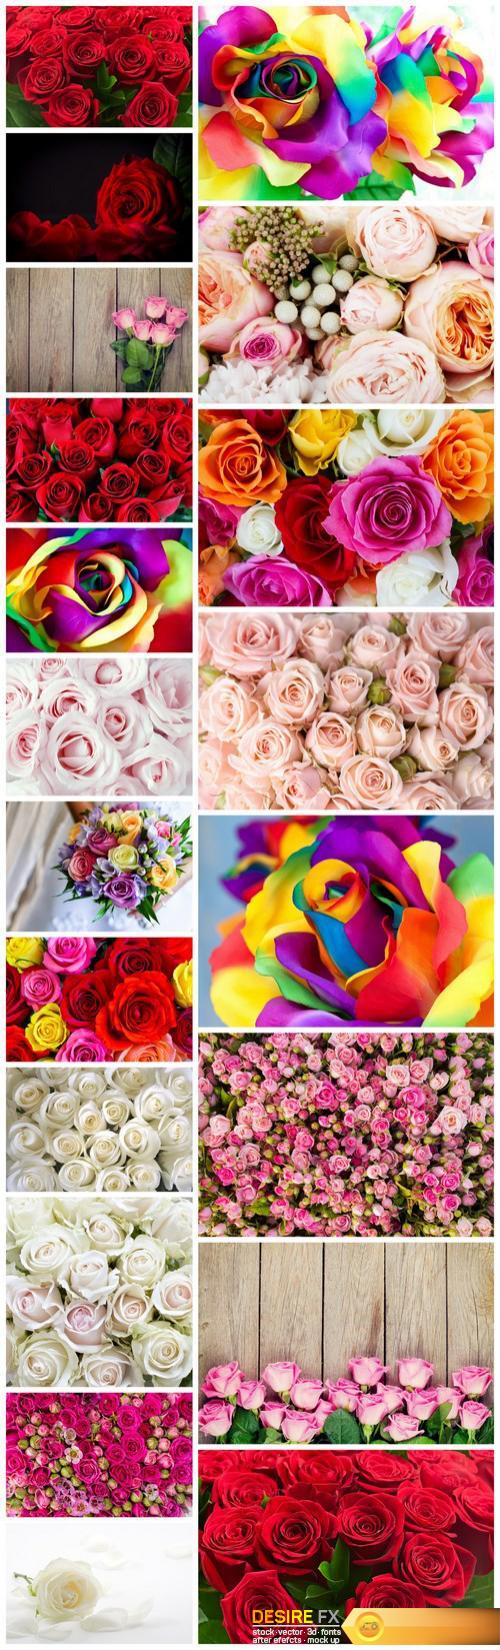 Beautiful Roses 3 - 20xUHQ JPEG